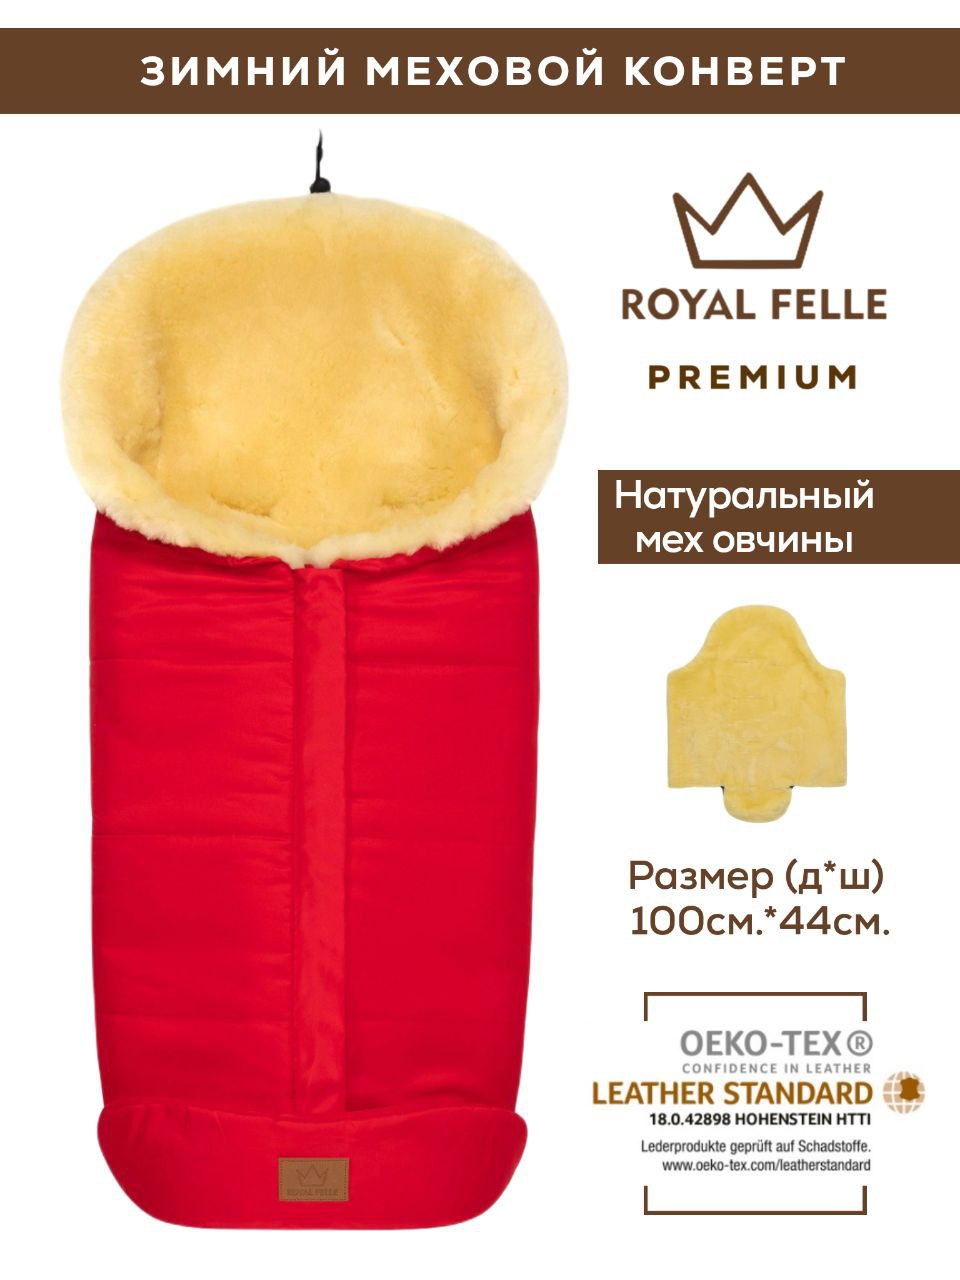 Конверт зимний меховой в коляску для новорожденных Royal Felle Premium Red красный kisu конверт для новорожденных w17 00101